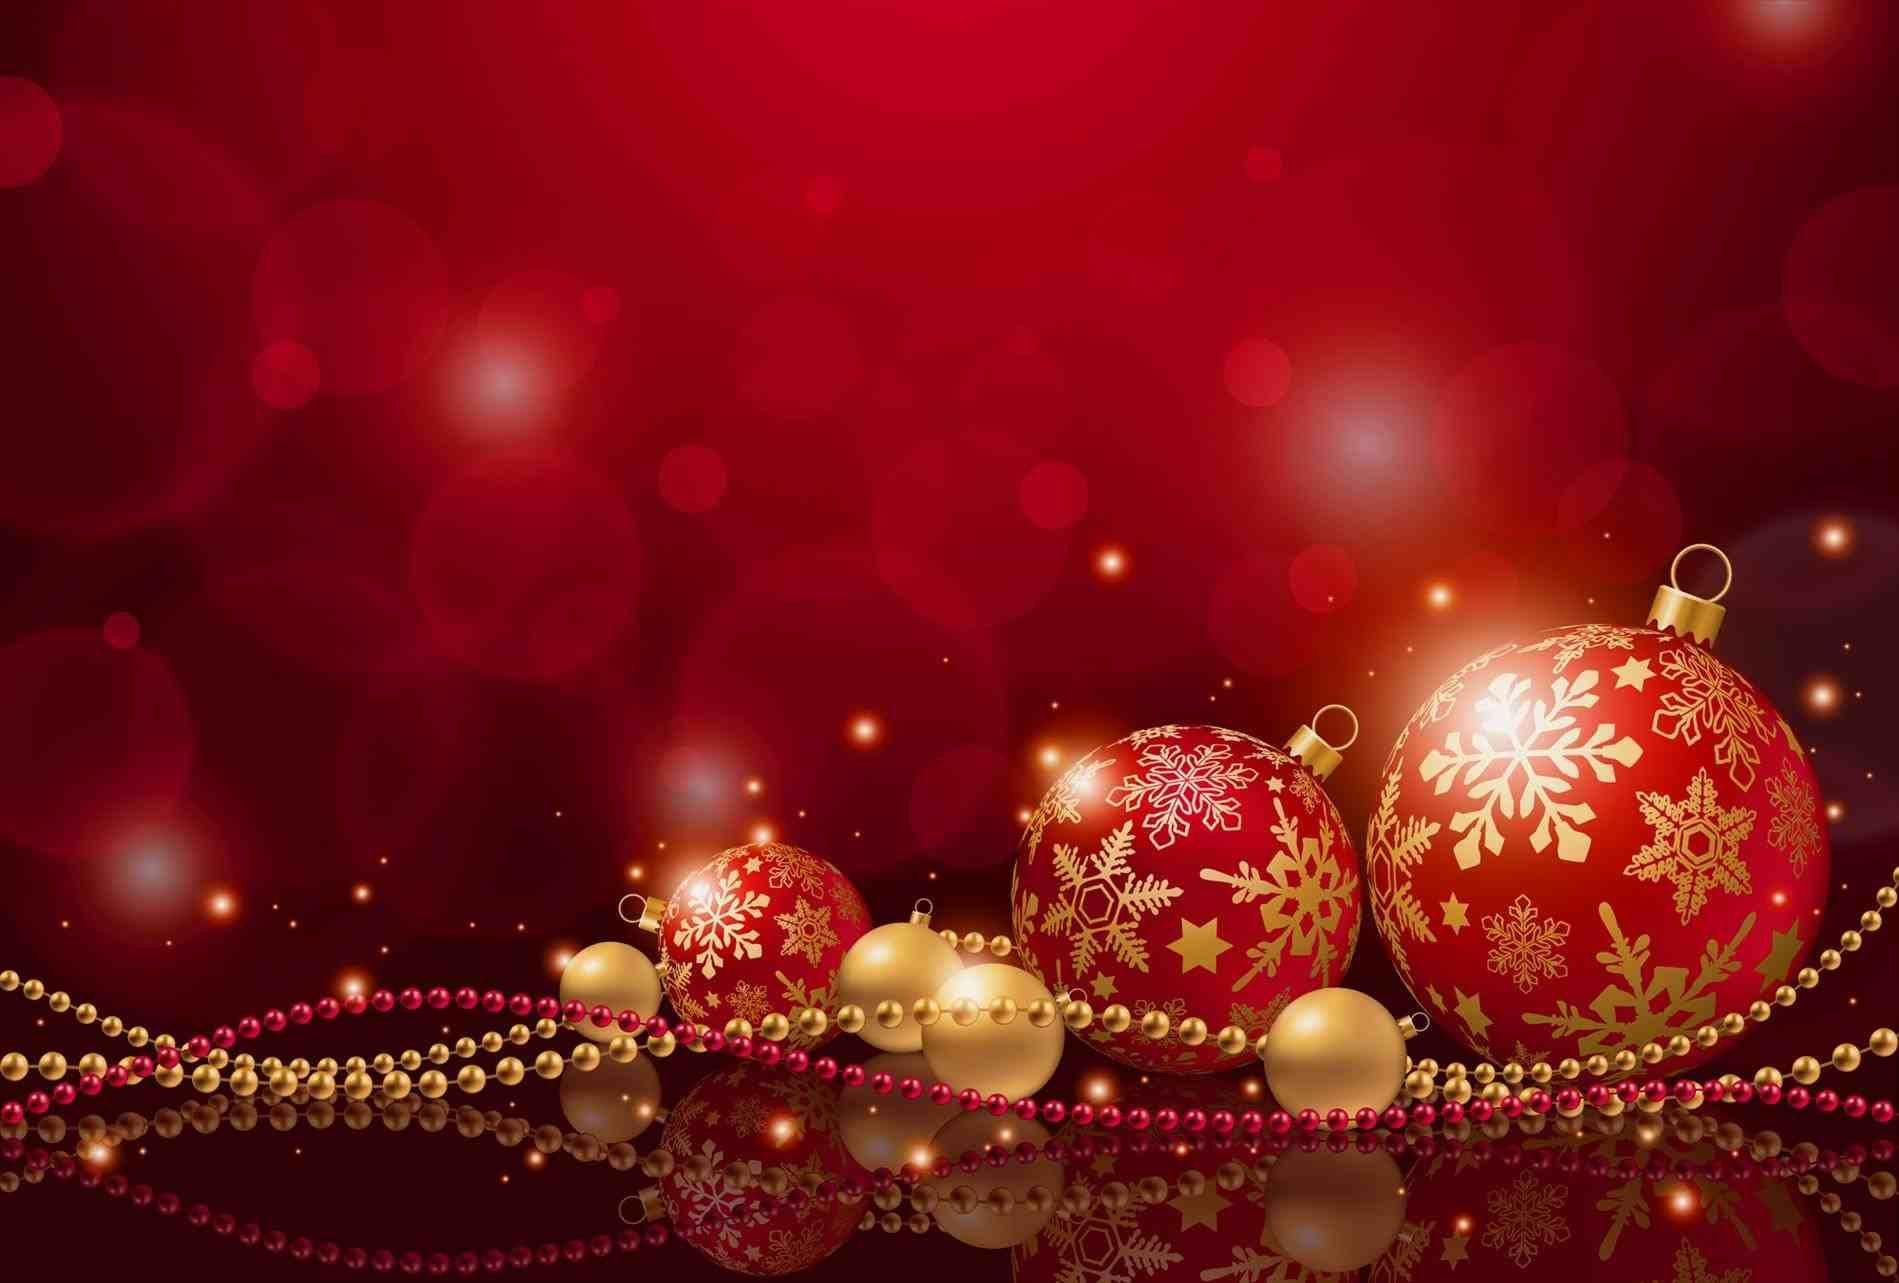 Hình nền đỏ và vàng Giáng sinh sẽ mang đến cho bạn cảm giác ấm áp và vui vẻ của mùa lễ hội. Sắc đỏ và vàng rực rỡ sẽ mang đến không gian lễ hội cho cuộc sống của bạn và kích thích trí tưởng tượng của bạn. Hãy xem ngay để tìm hiểu hình ảnh đẹp mắt này.